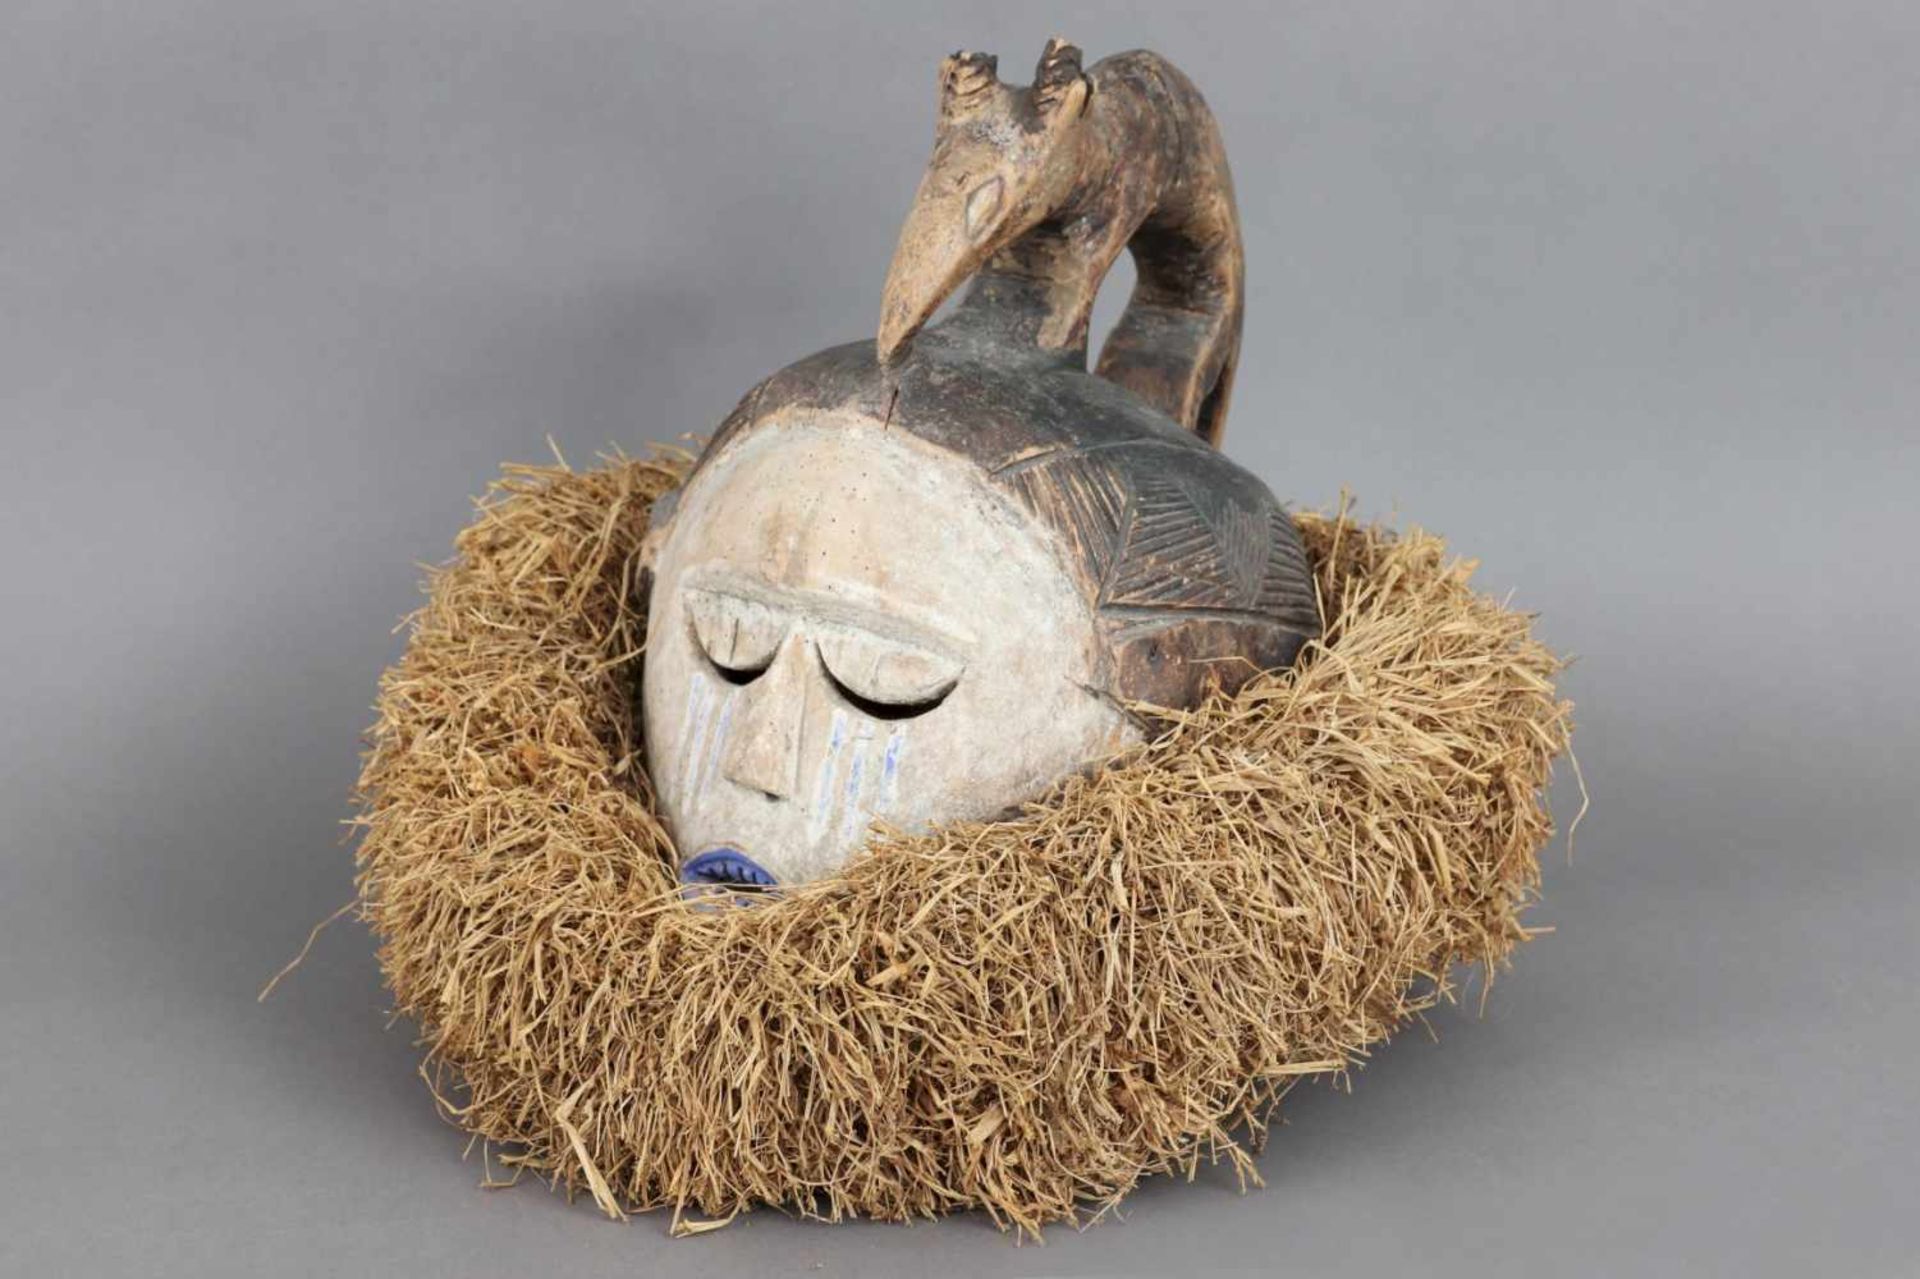 Afrikanischer Tanzaufsatz-/Haubenmaske Holz und Rafia, wohl Kongo, weiß gekalktes (Kaolin) Gesicht